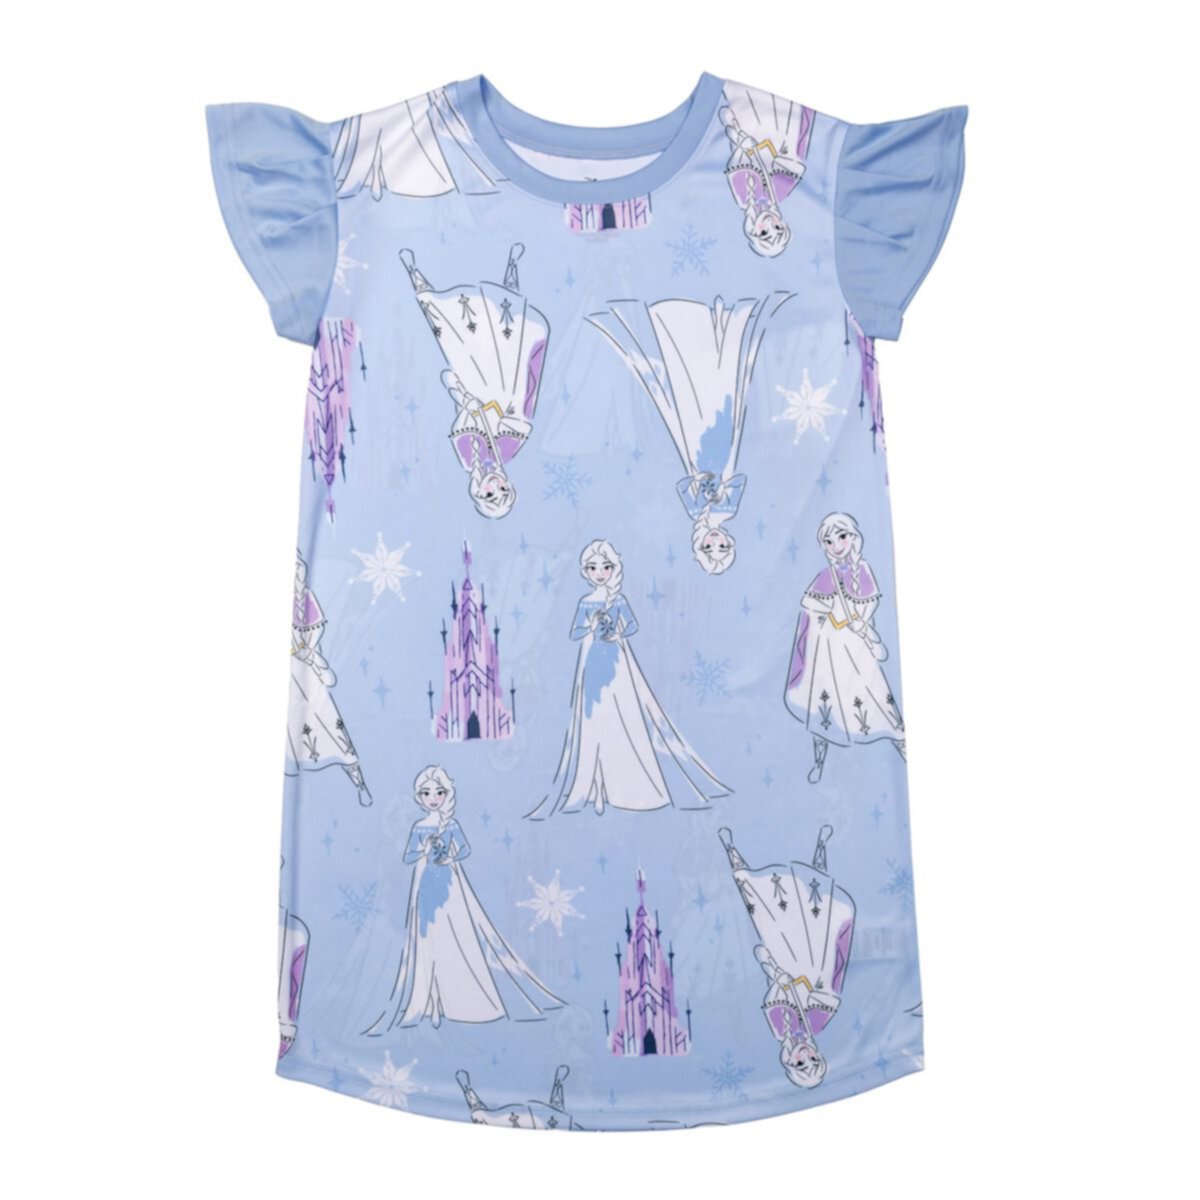 Ночная рубашка Disney's Frozen Anna & Elsa для девочек 4–8 лет со сплошным принтом Licensed Character